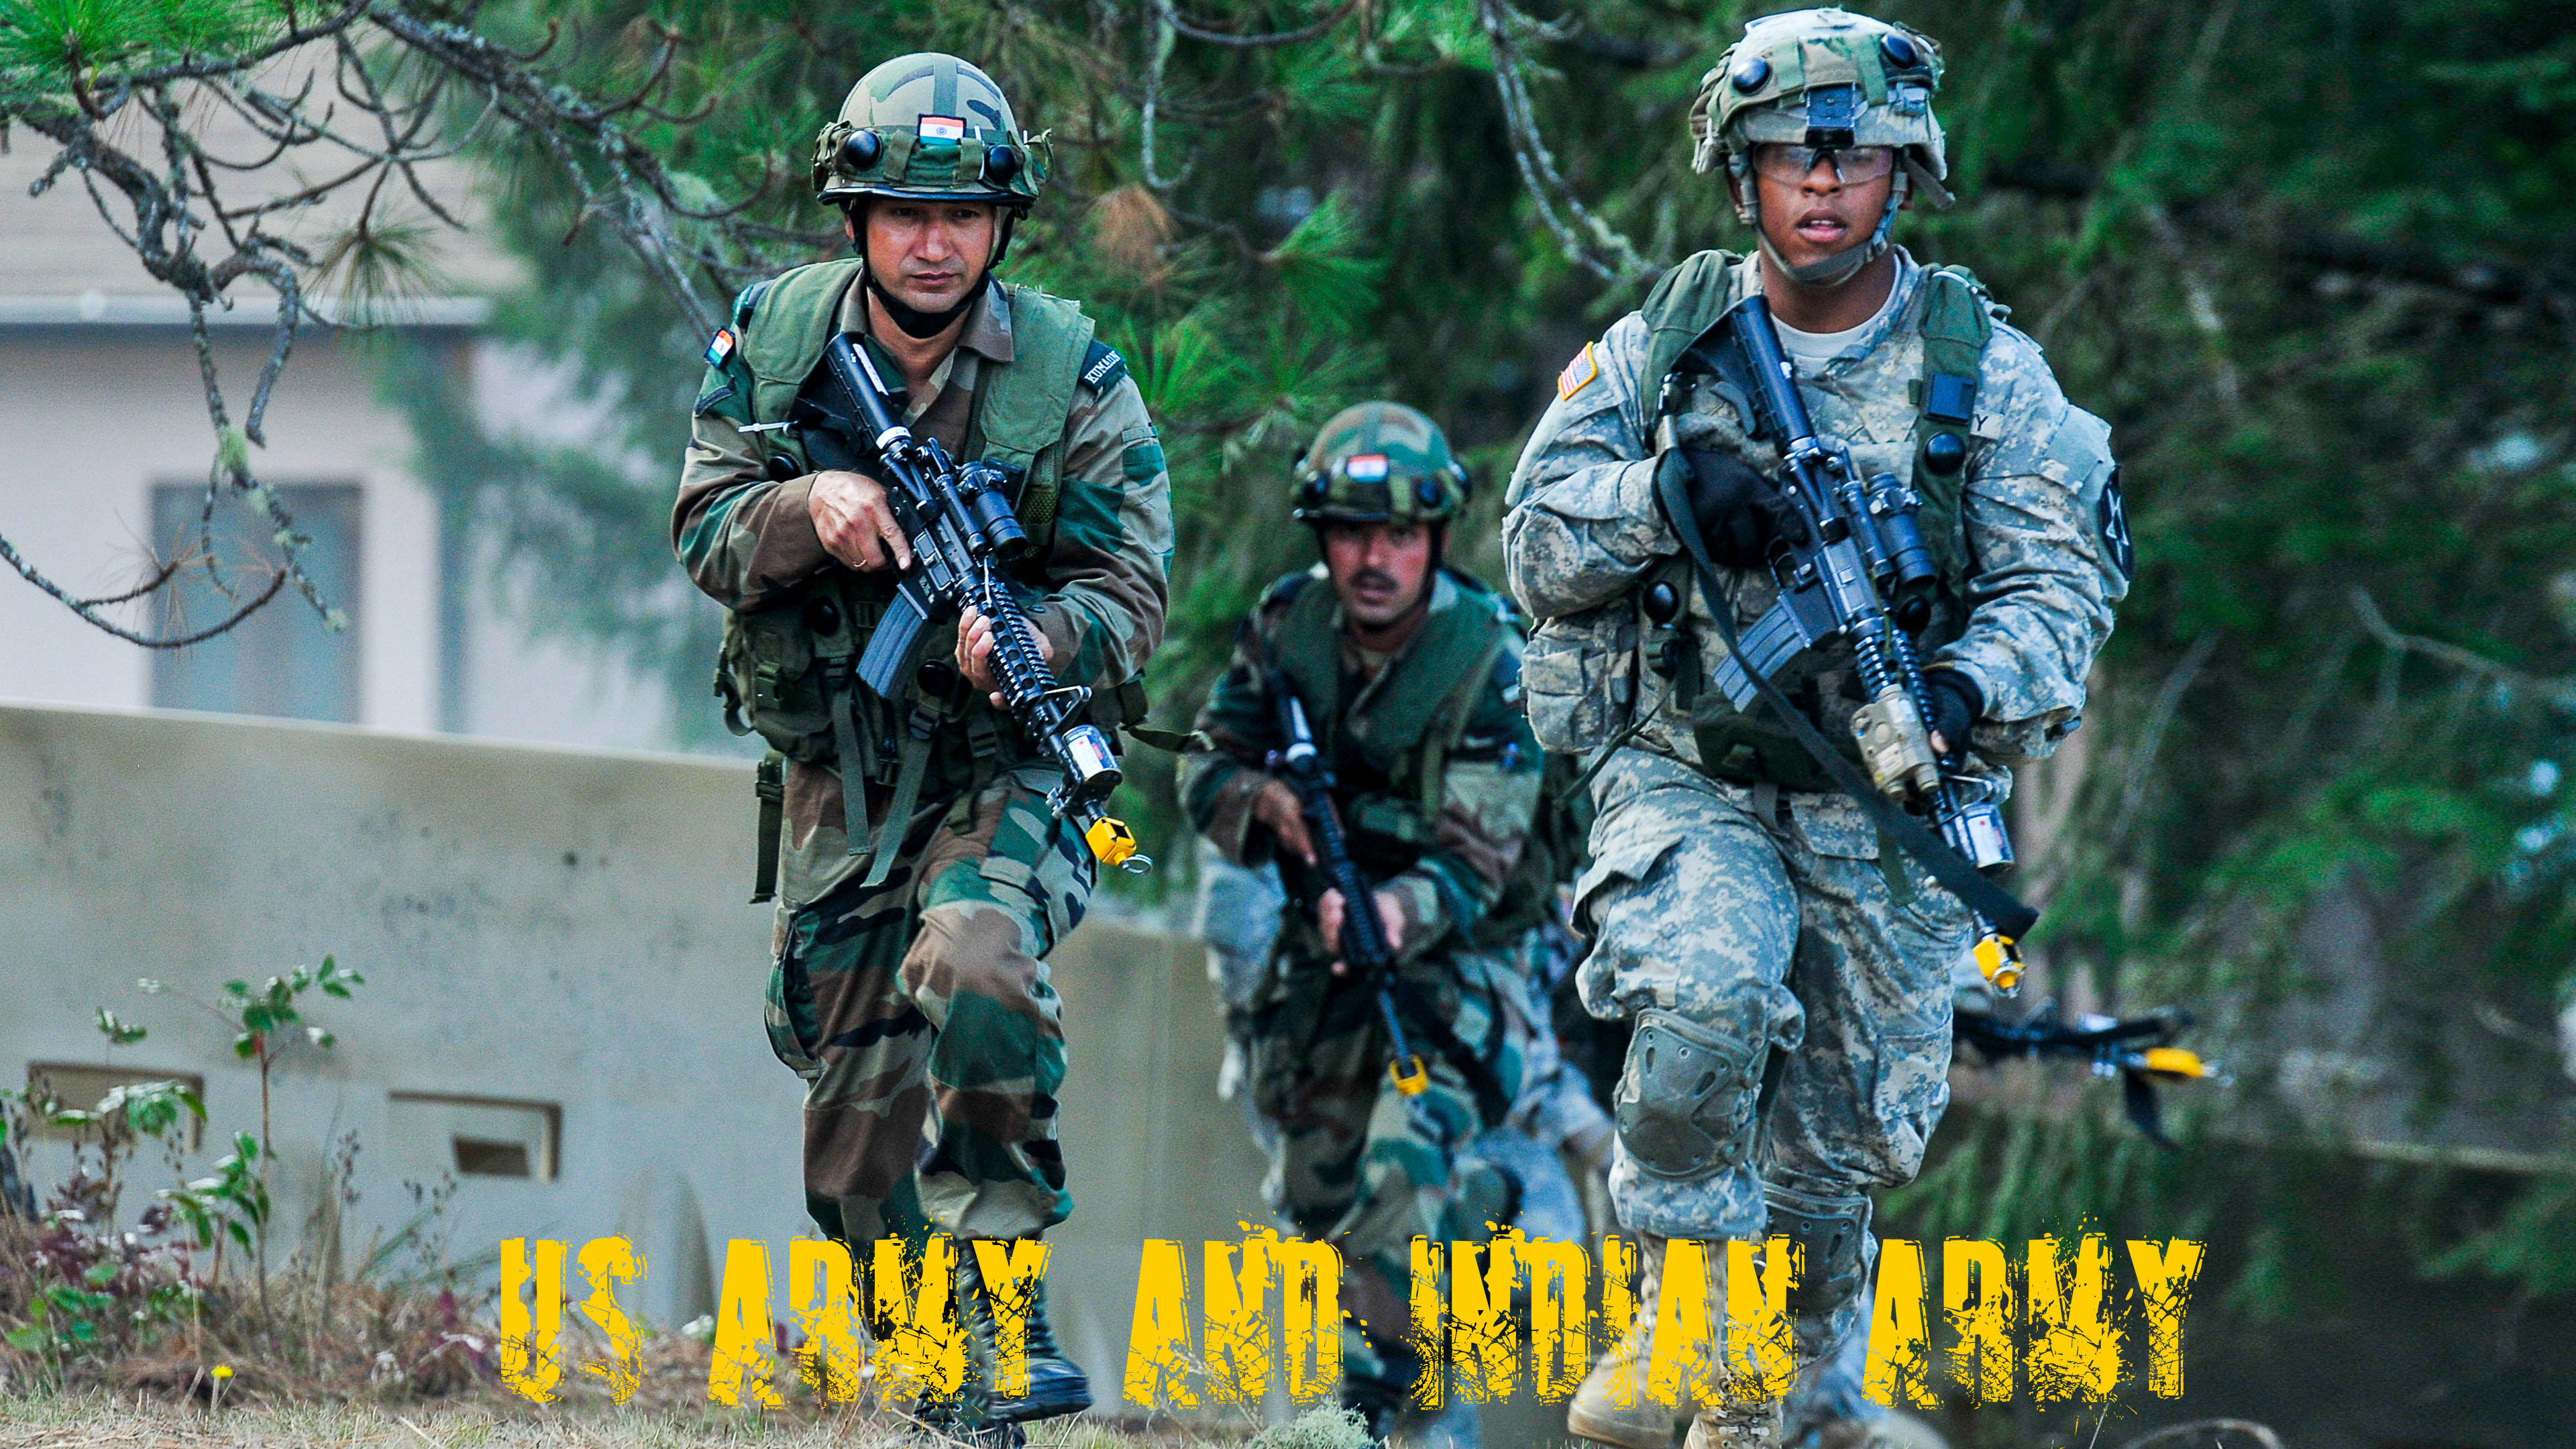 fondo de pantalla de fotos del ejército indio,ejército,soldado,militar,infantería,camuflaje militar